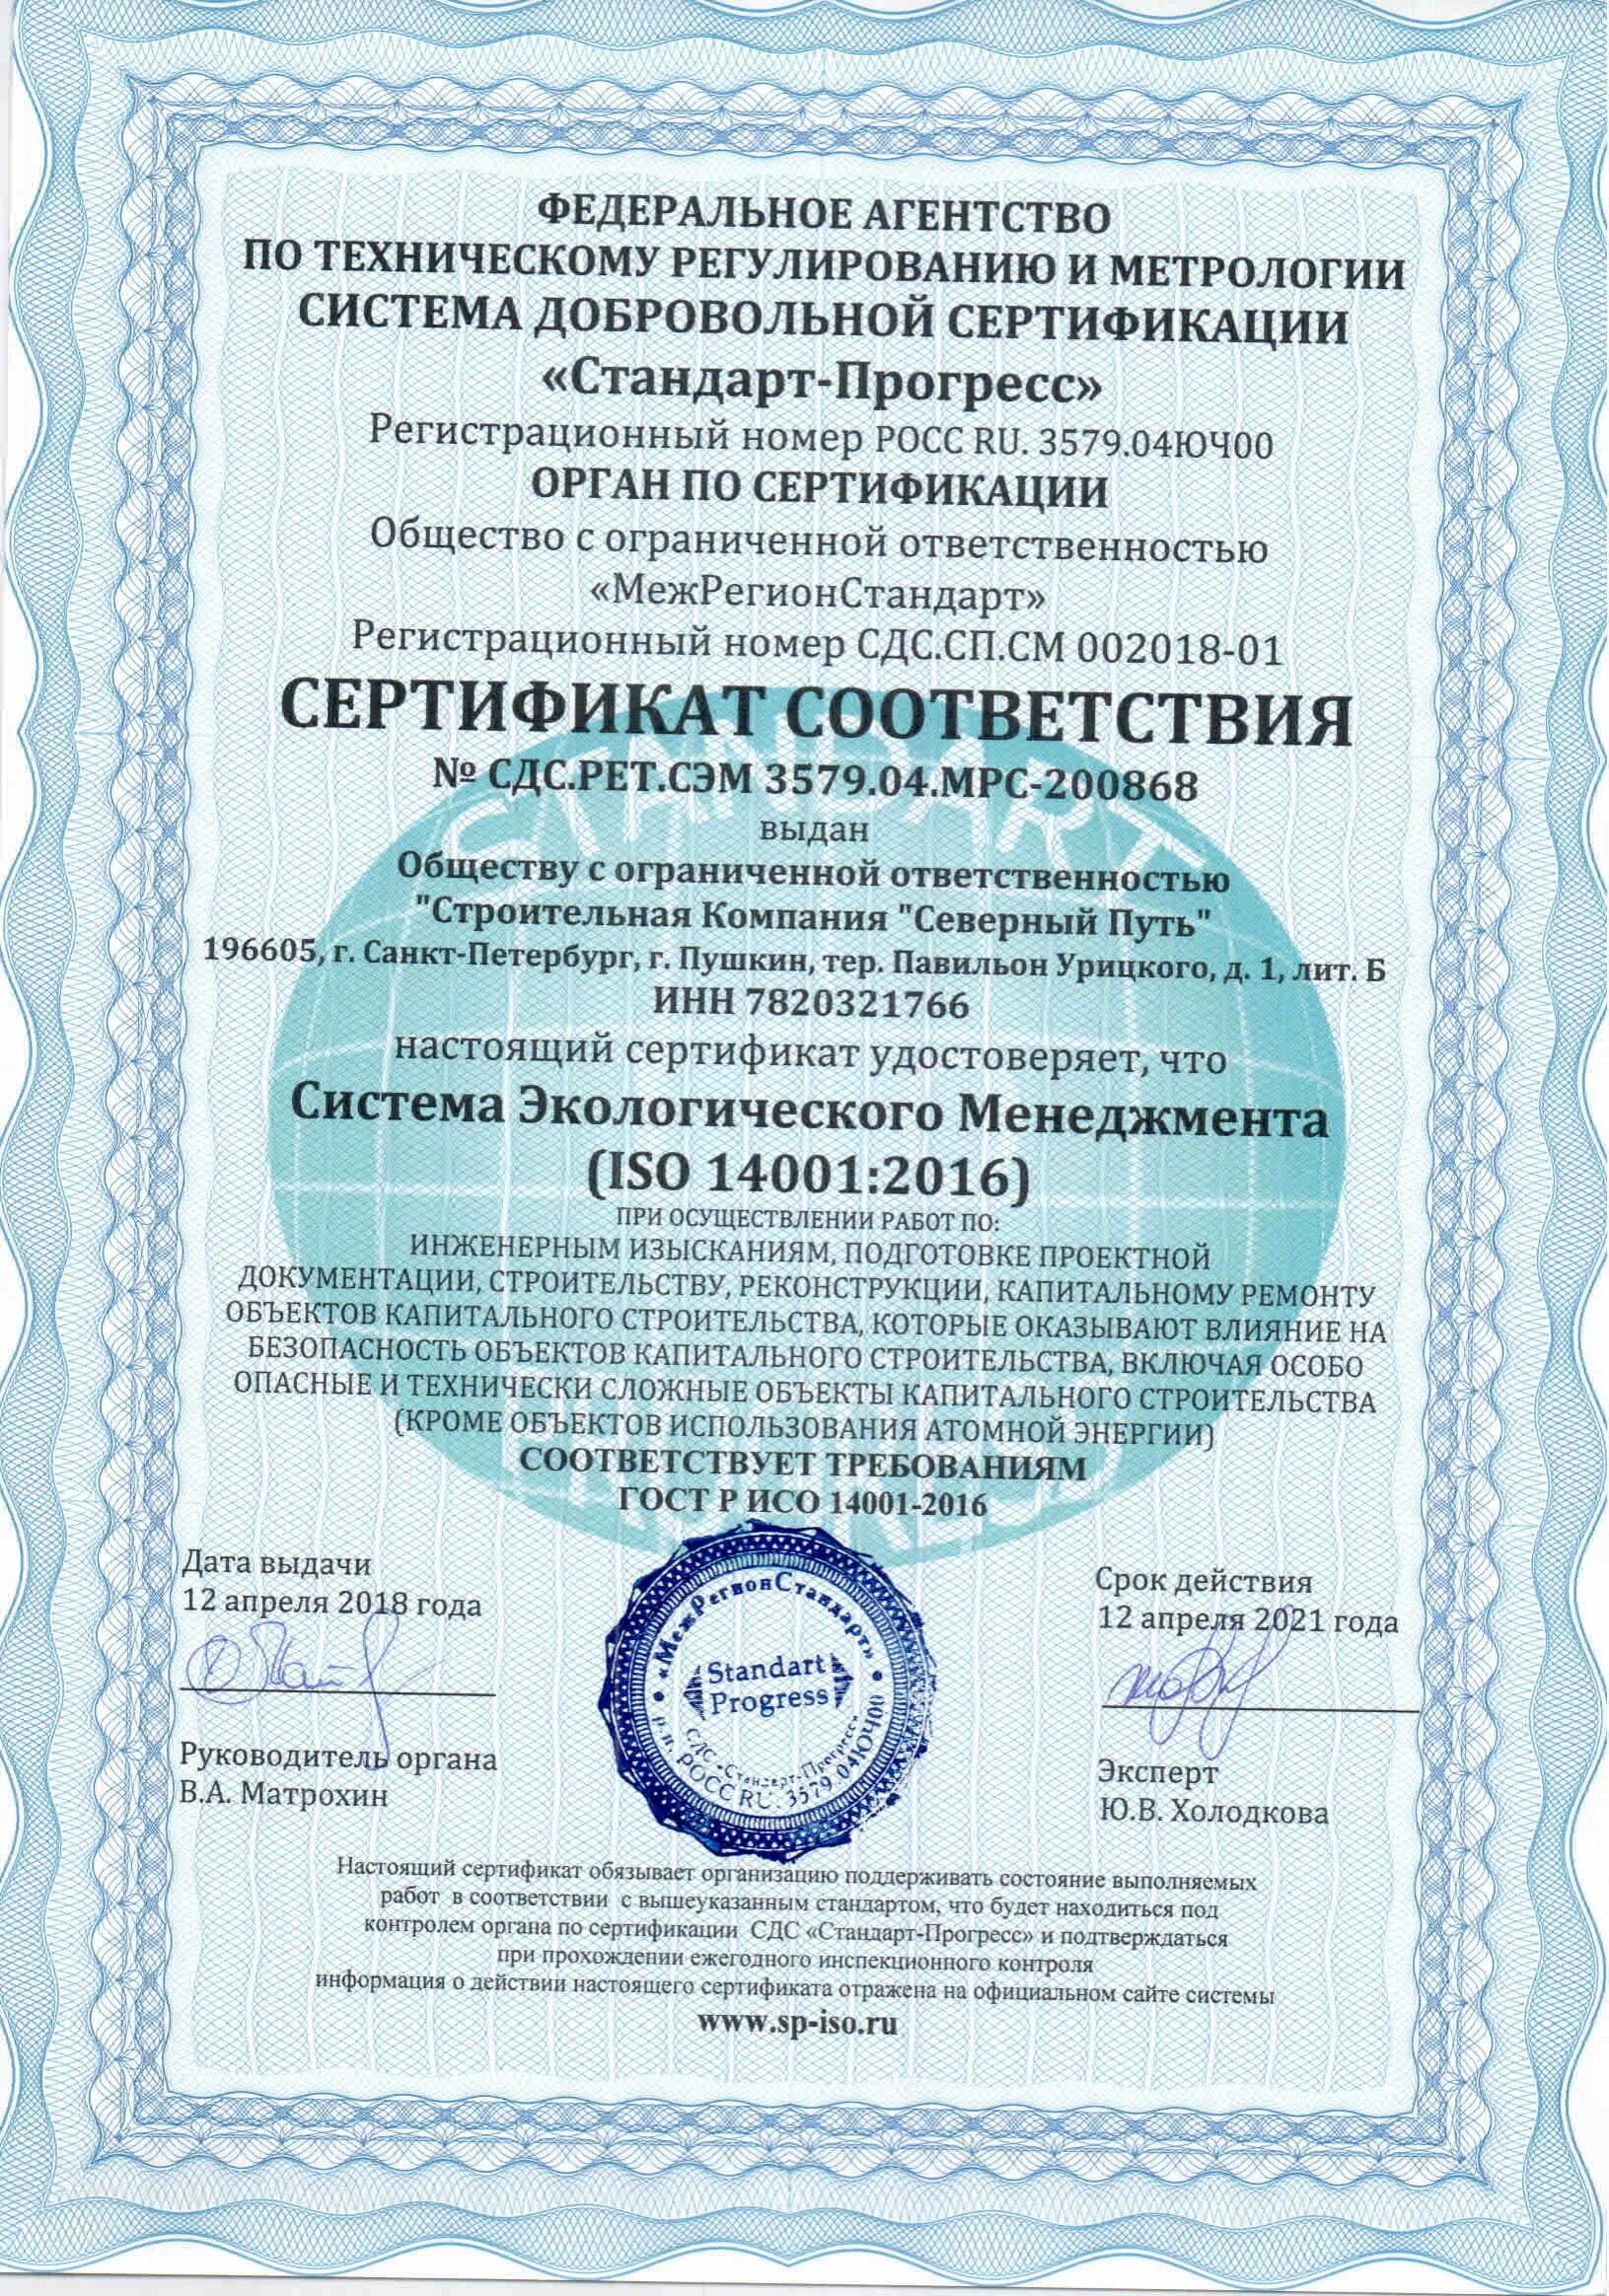 Сертификат соответствия OHSAS 18001. Сертификат соответствия ИСО 14001. ГОСТ Р ИСО 14001 сертификат. Сертификат ГОСТ Р ИСО 14001-2016 ISO 14001. Гост р исо 14001 2016 эталон гарант